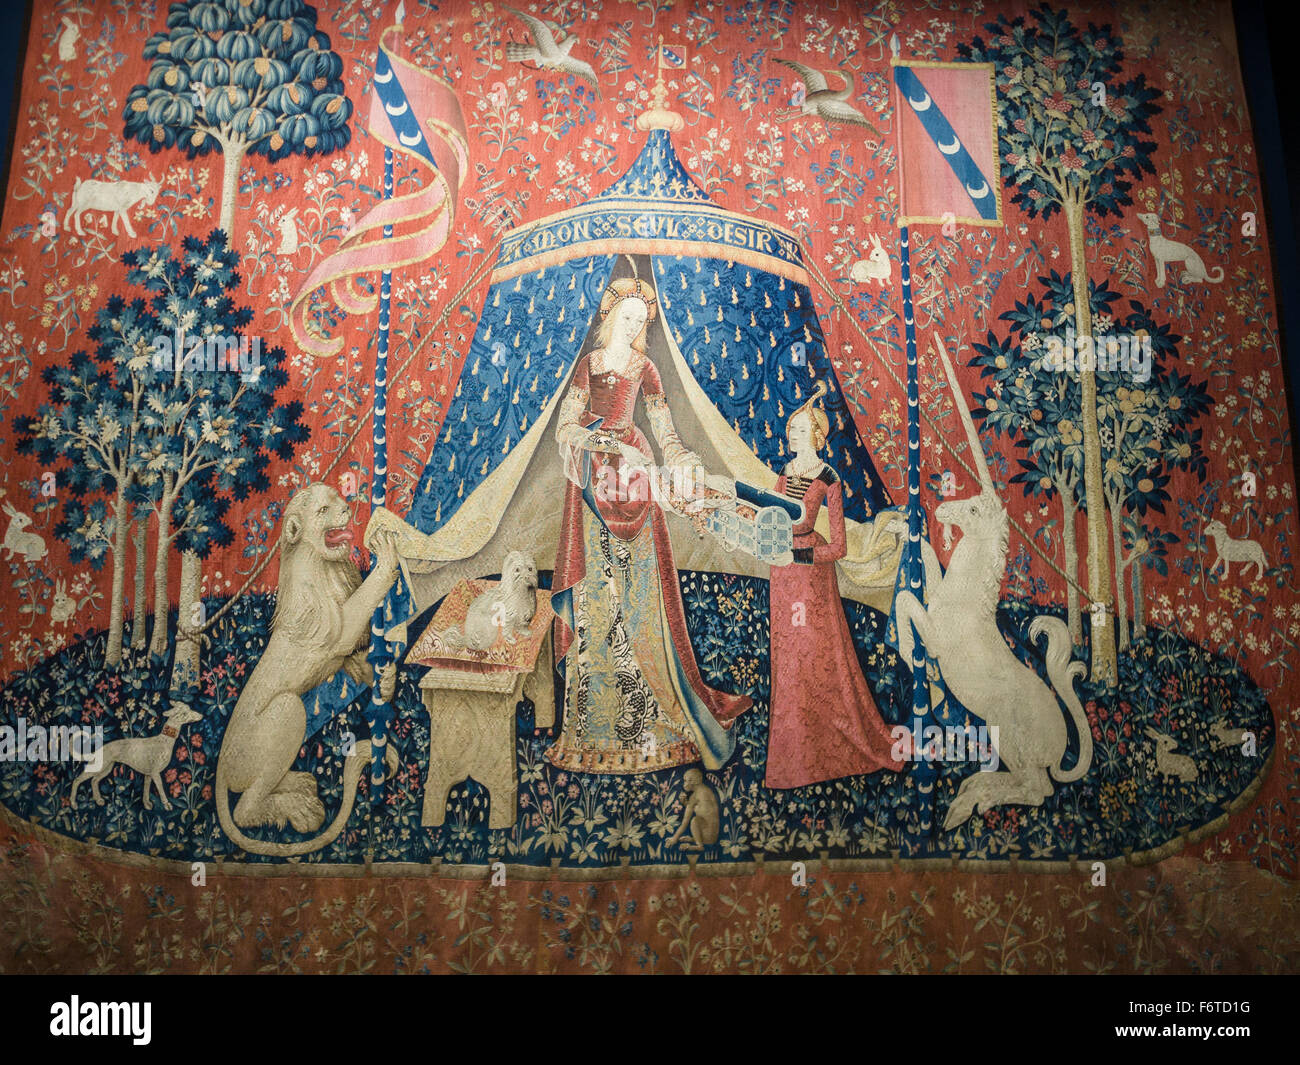 La dama y el Unicornio tapiz: deseo. À mon seul désir, mi único deseo es uno de una serie de tapices unicornio mujer famosa Foto de stock